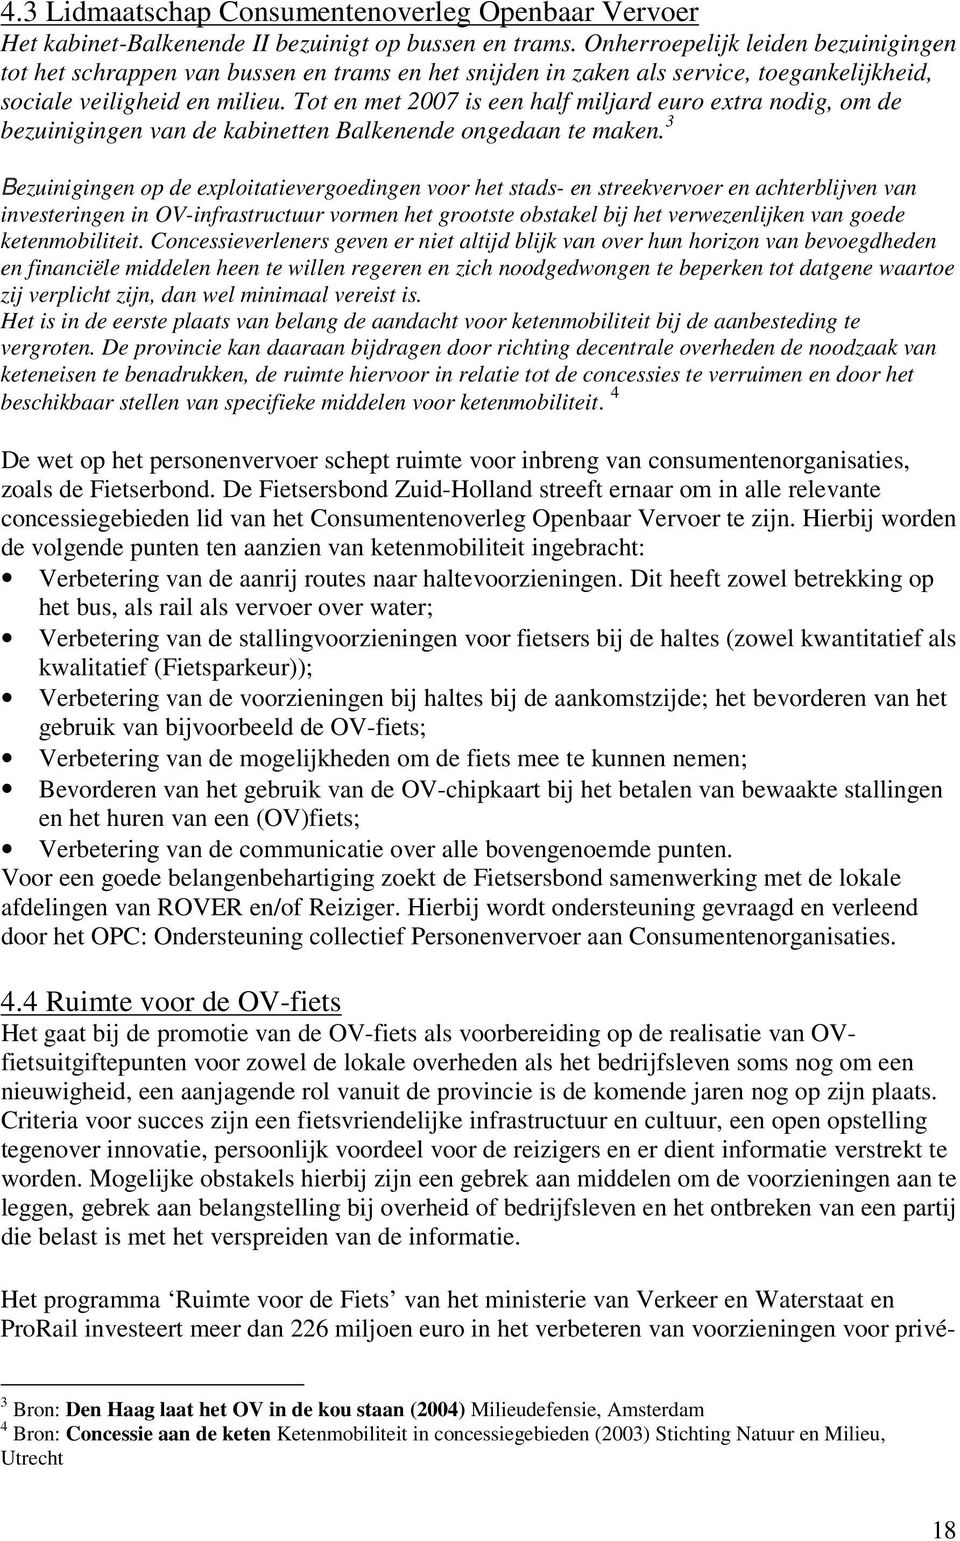 Tot en met 2007 is een half miljard euro extra nodig, om de bezuinigingen van de kabinetten Balkenende ongedaan te maken.